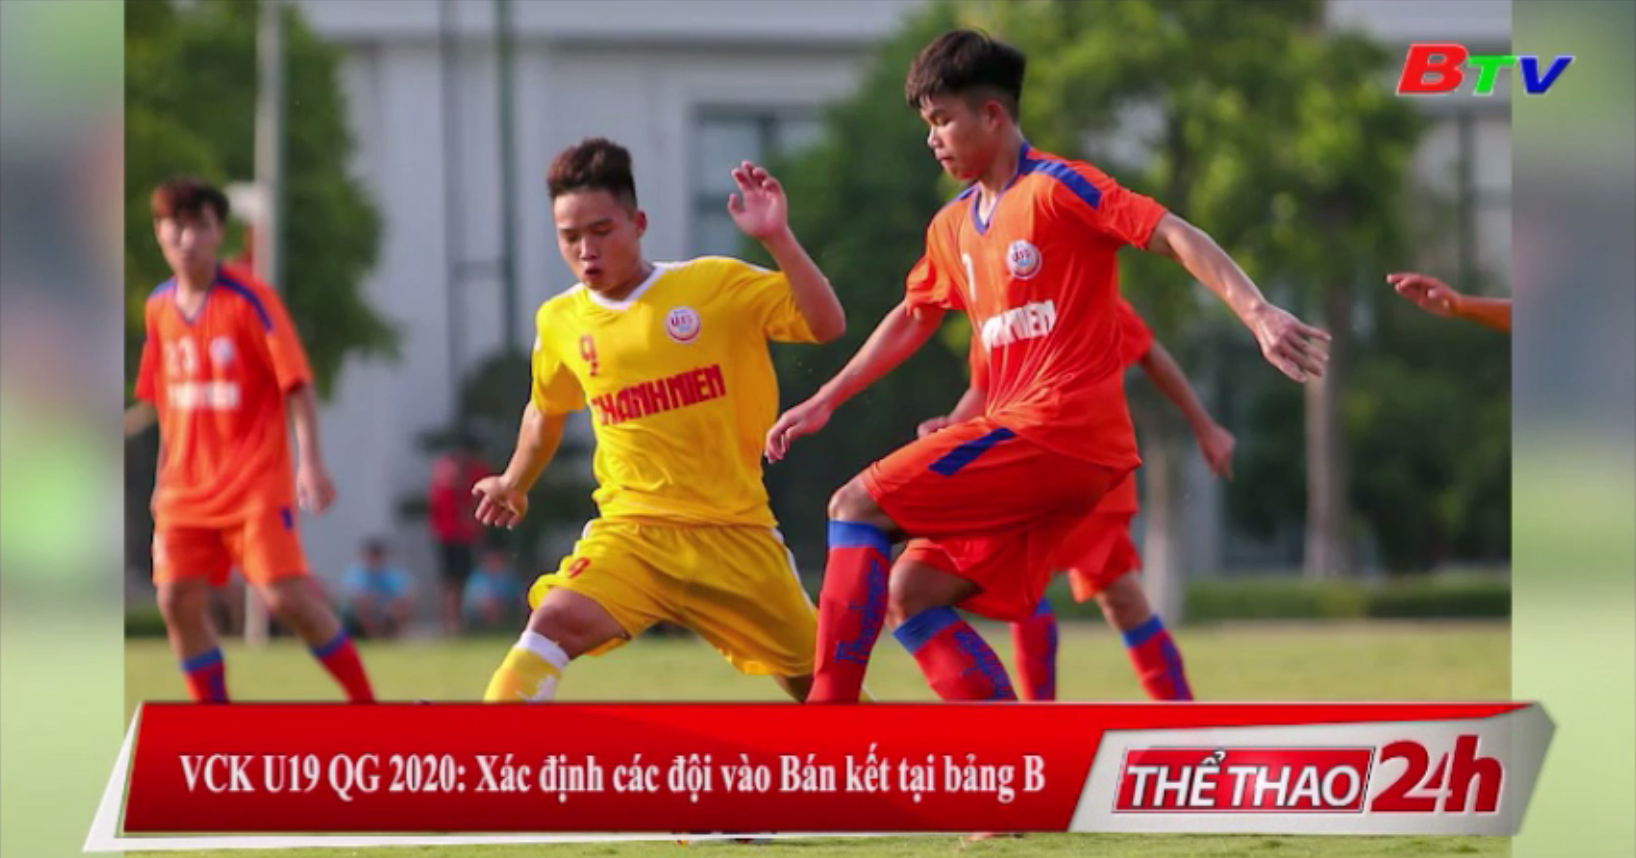 VCK U19 QG 2020 - Xác định các đội vào Bán kết tại bảng B